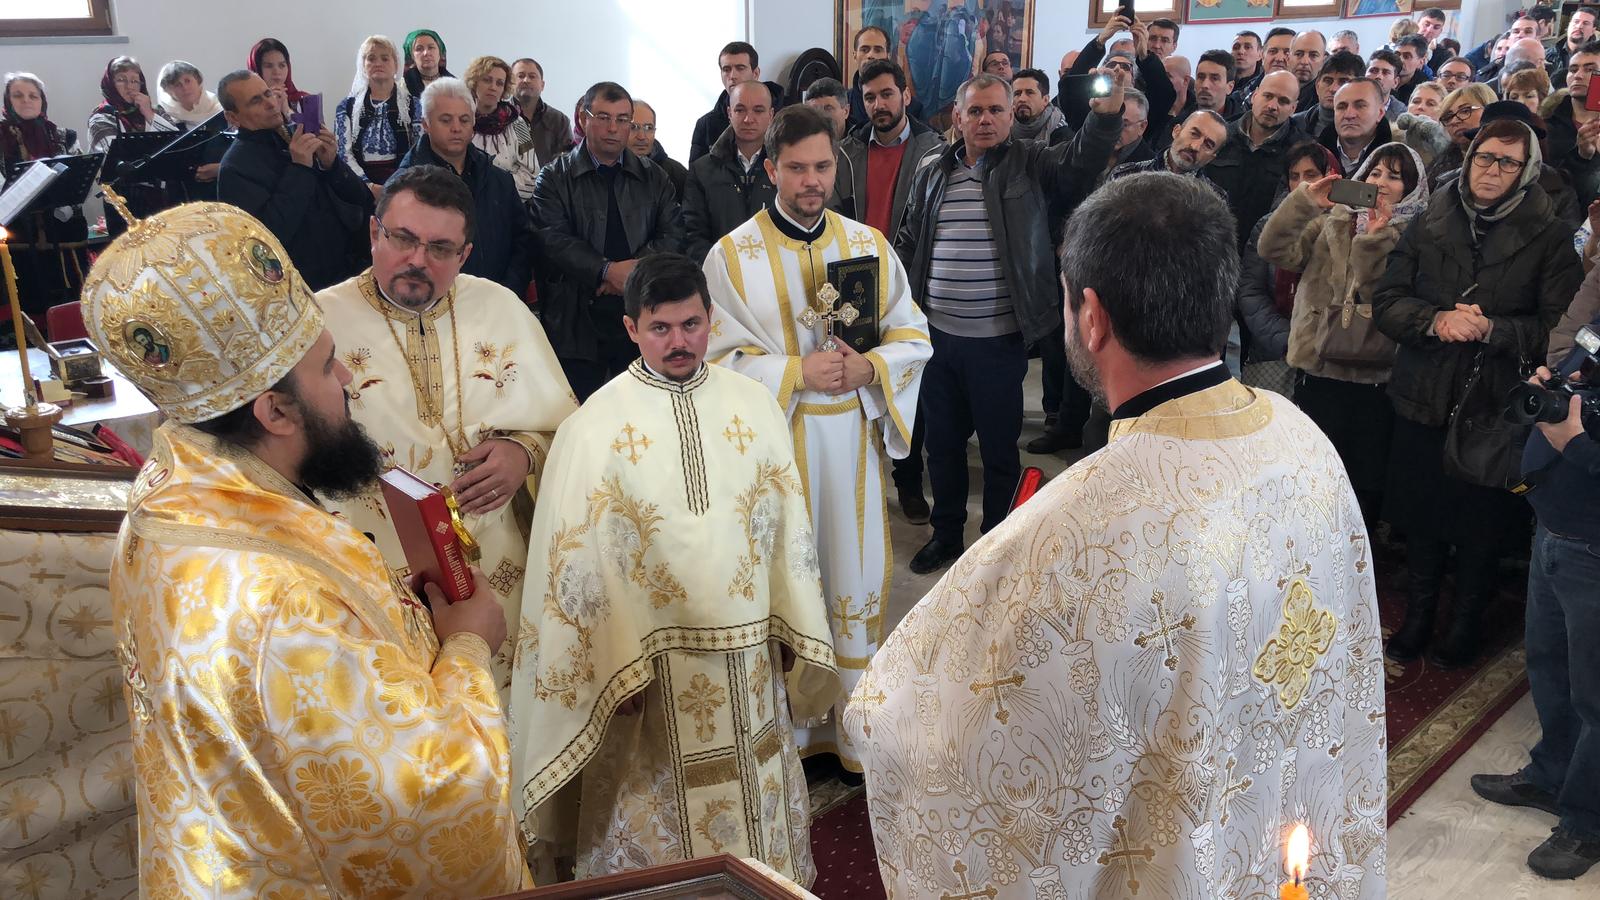 Festa Patronale, il Vescovo ortodosso, Atanasie de Bogdania regala le reliquie di Santa Lucia a Chivasso. La celebrazione oggi, domenica 2 dicembre.